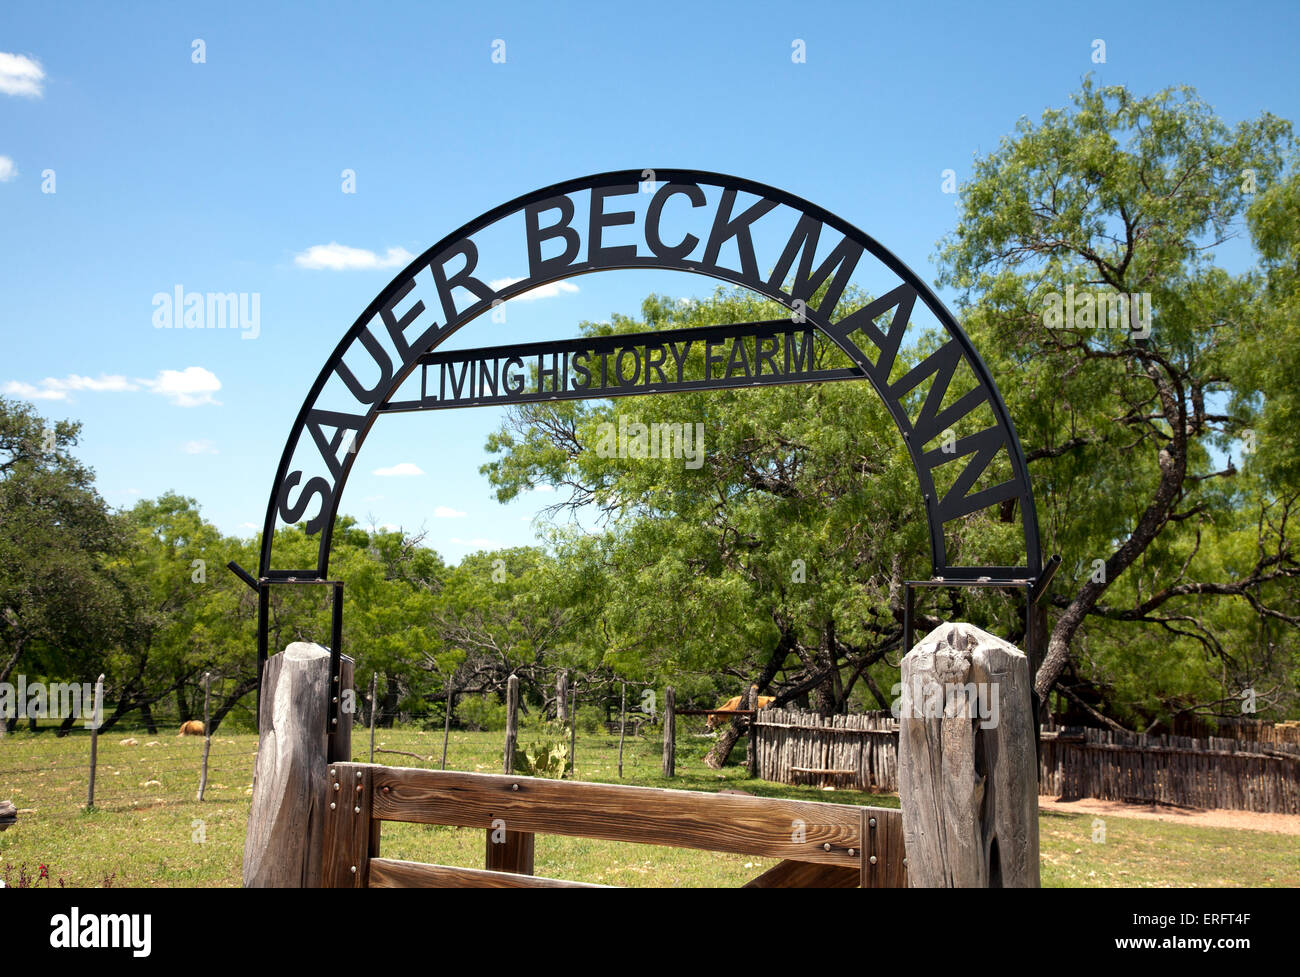 Puerta de entrada, Sauer-Beckman Living History Farm en LBJ, Parques Estatales y Sitios Históricos, Stonewall, Texas. Foto de stock